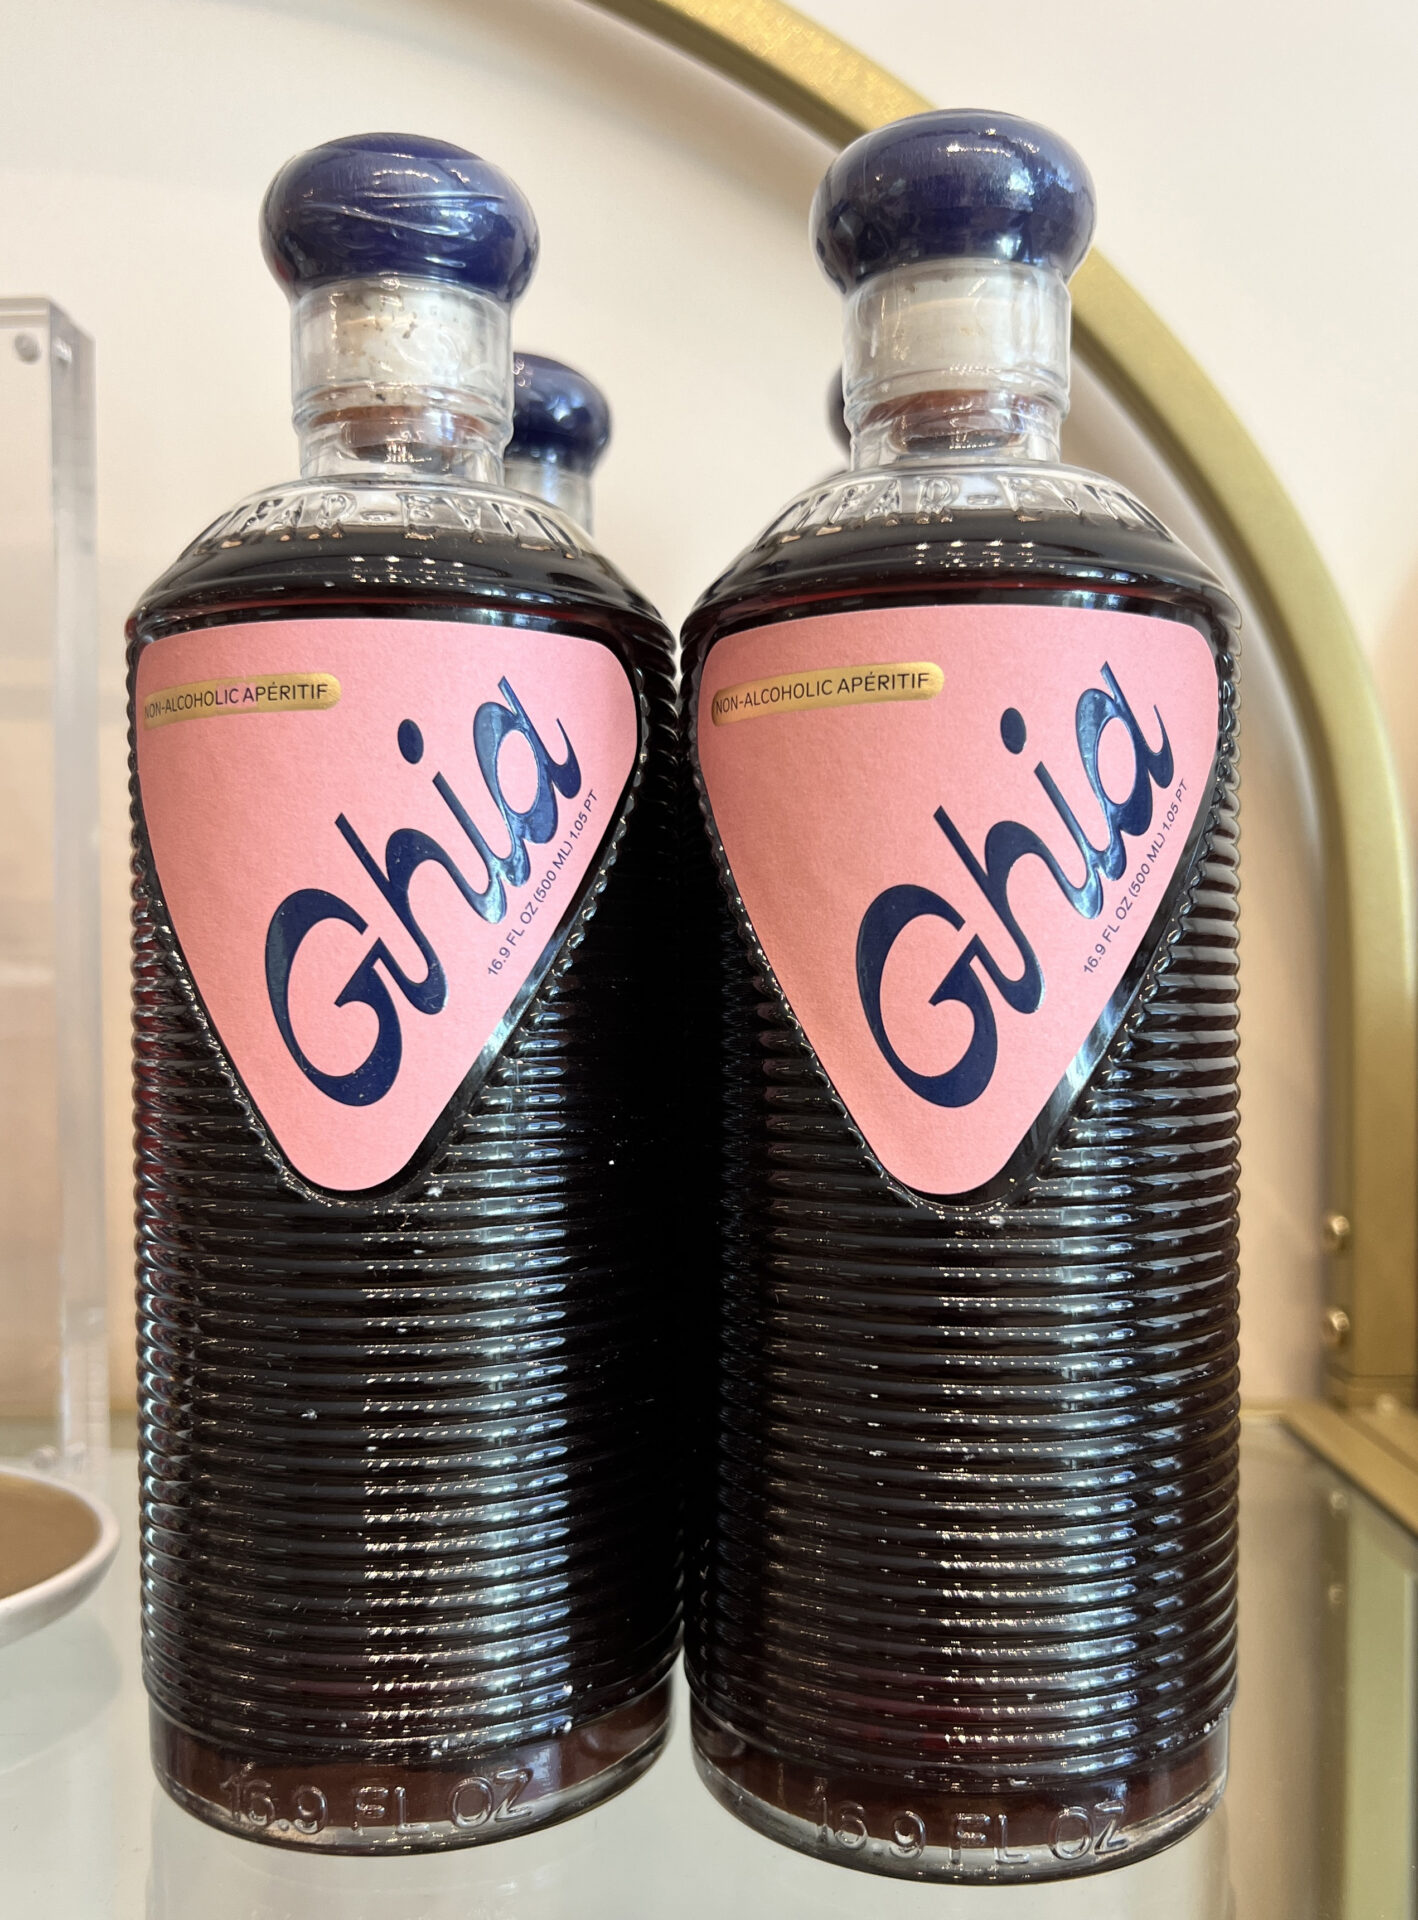 ghia, a non alcoholic aperitif that Sèchey sells